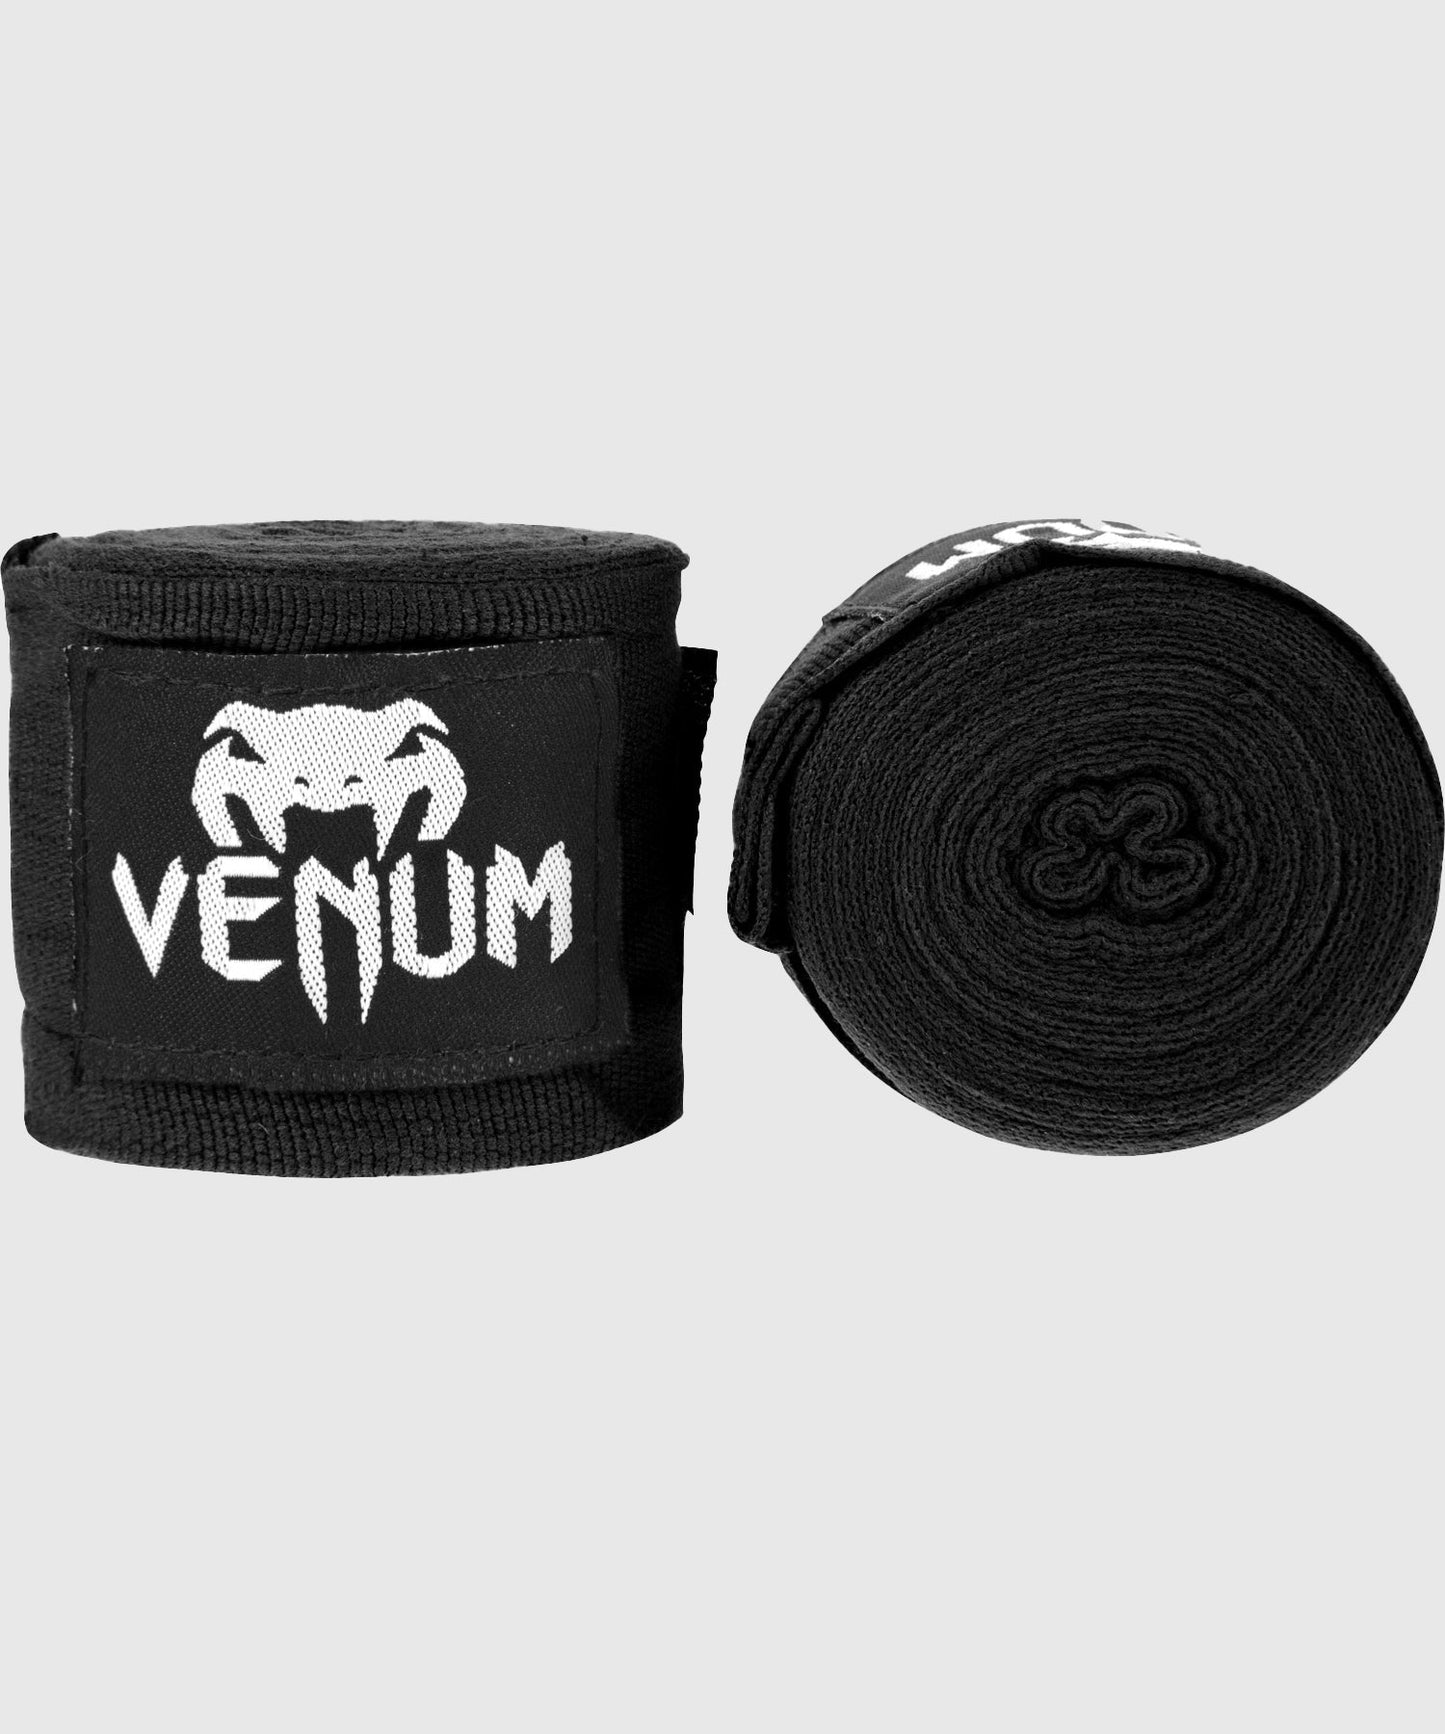 Bandages de Boxe Venum Kontact - Original - 4 mètres (4 coloris) - Noir